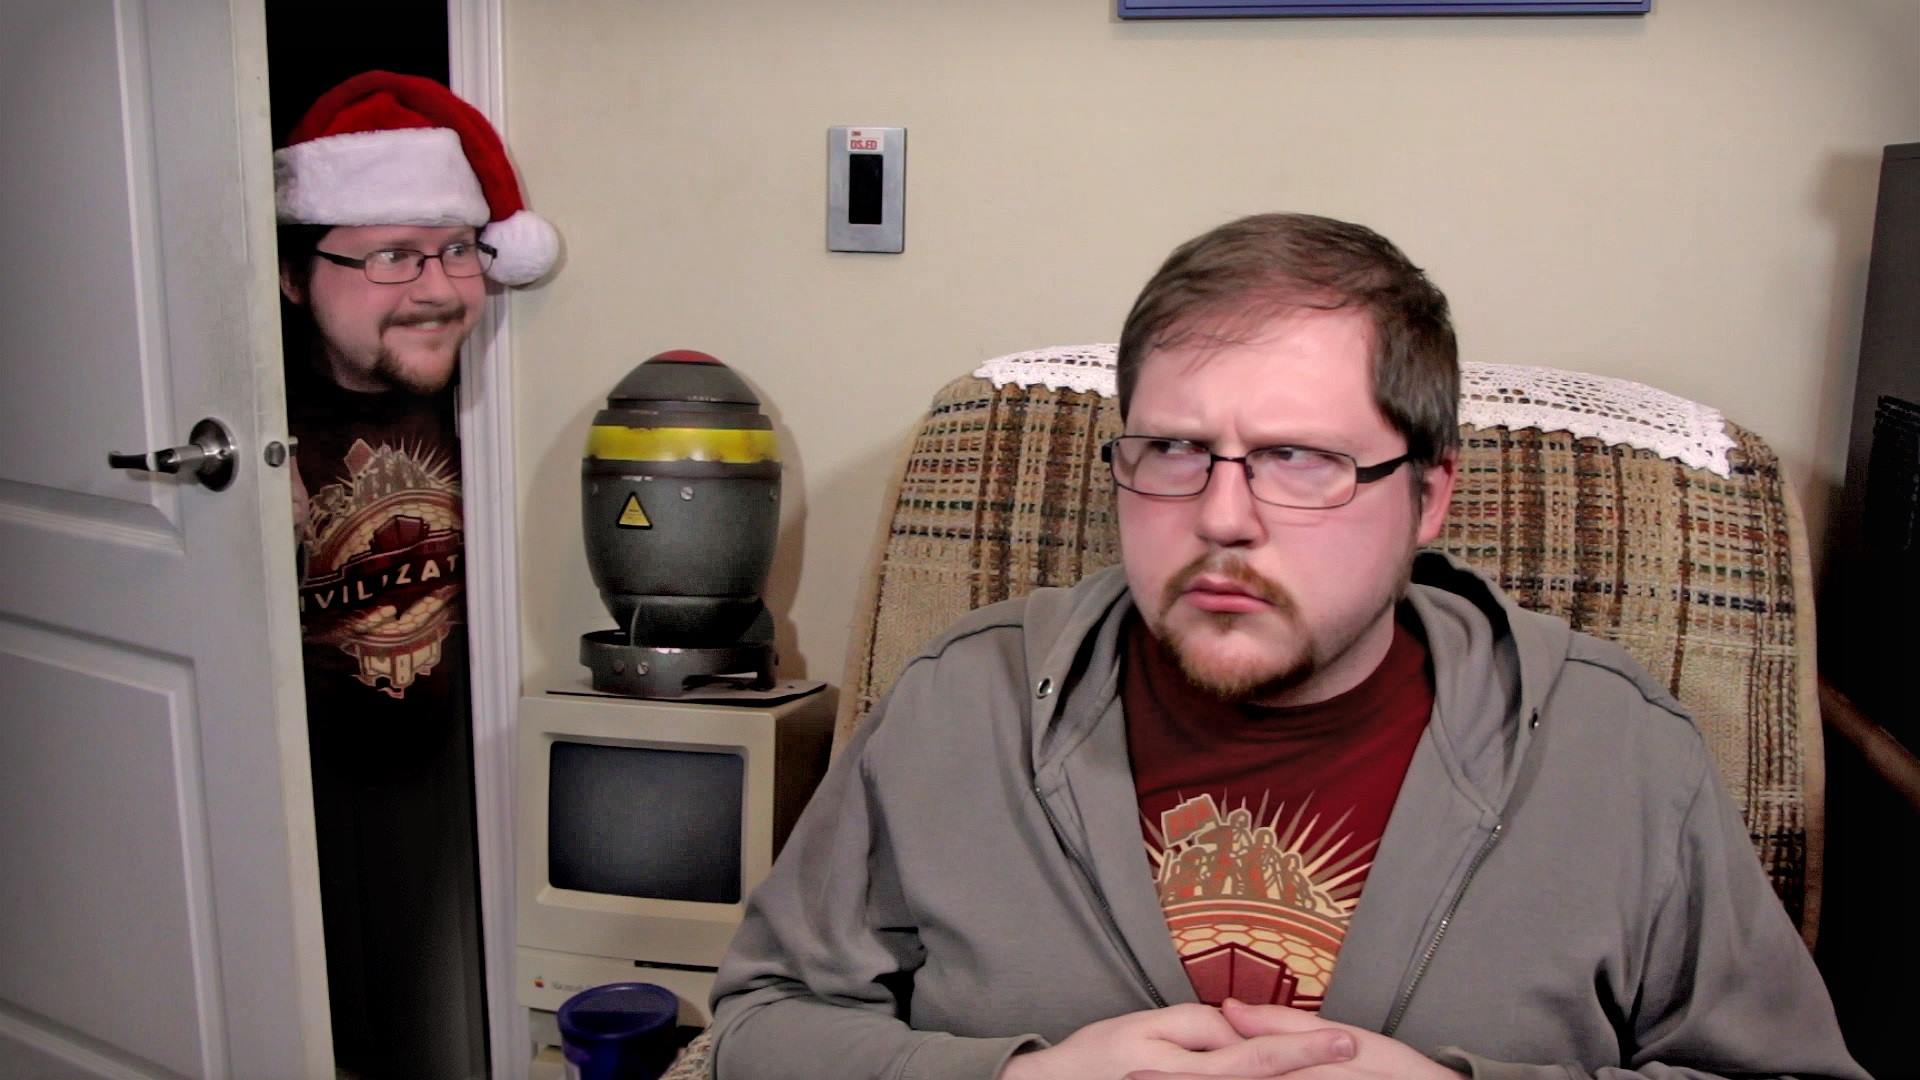 Un gag récurrent sur la chaîne YouTube LGR est l'arrivée du Christmas Clone peu avant Noël